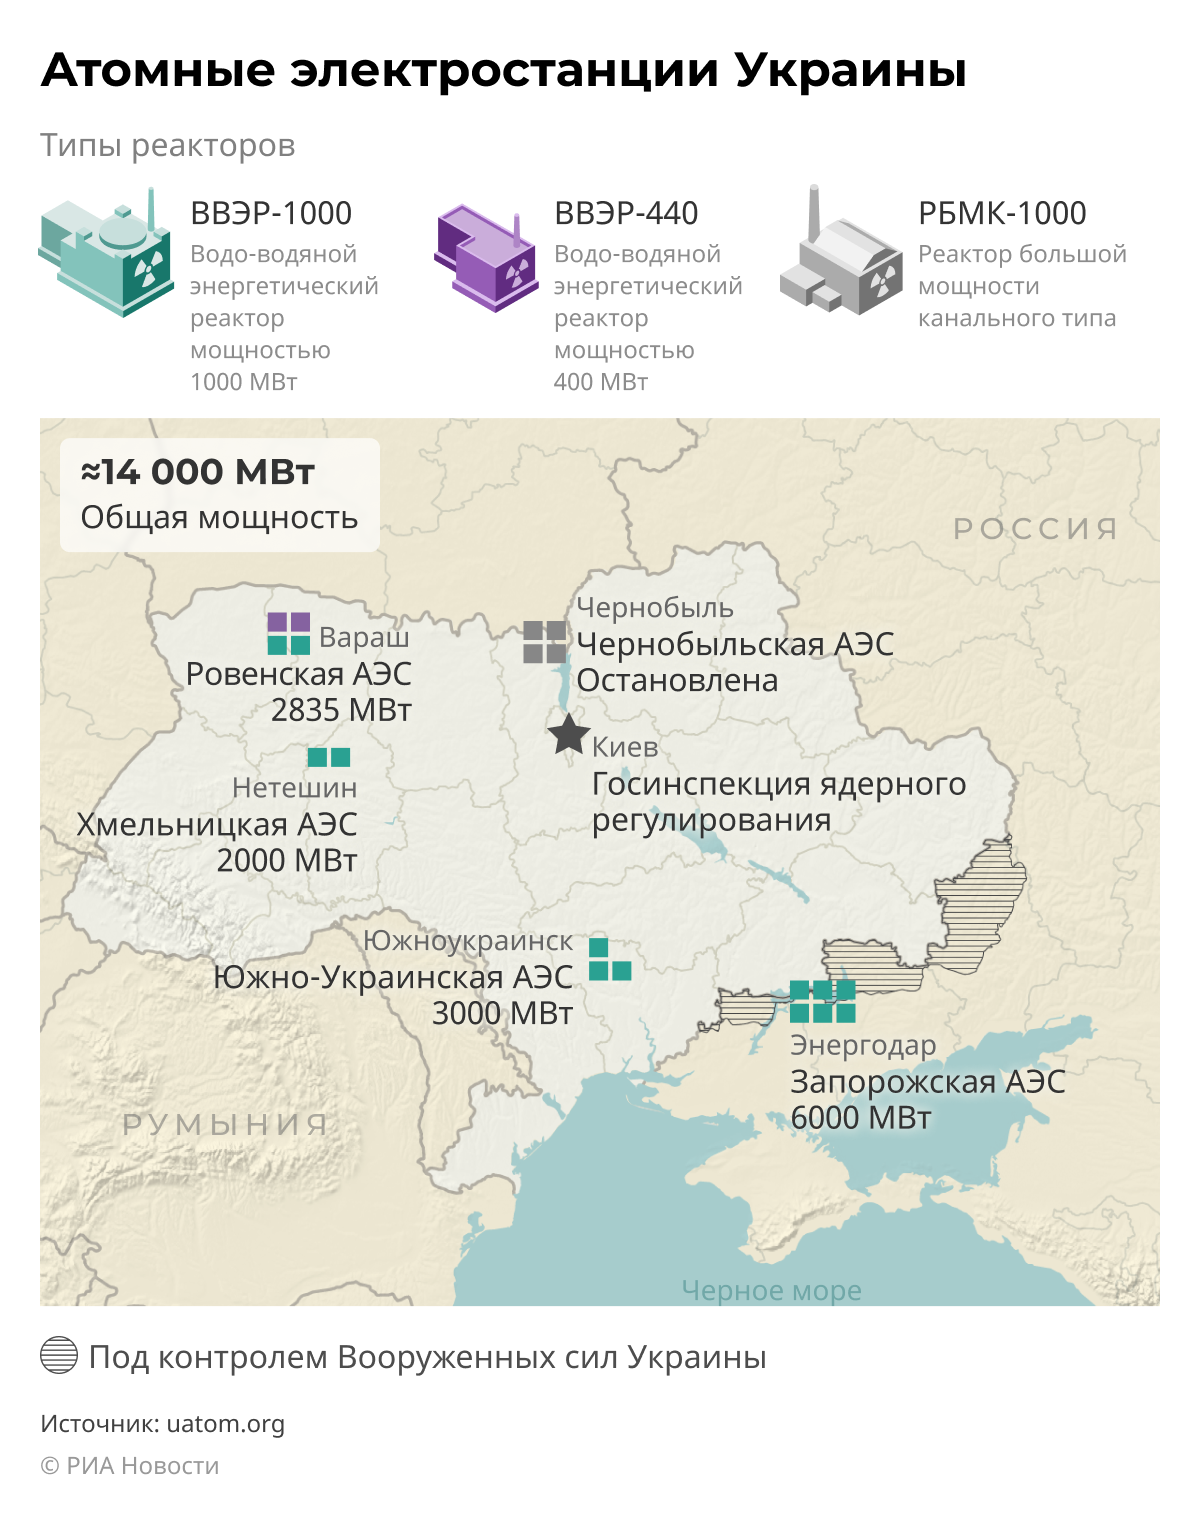 Где аэс на украине. АЭС Украины на карте. Атомные станции Украины на карте. Атомные электростанции Украины на карте. Атомные станции Украины на карте действующие на 2022.